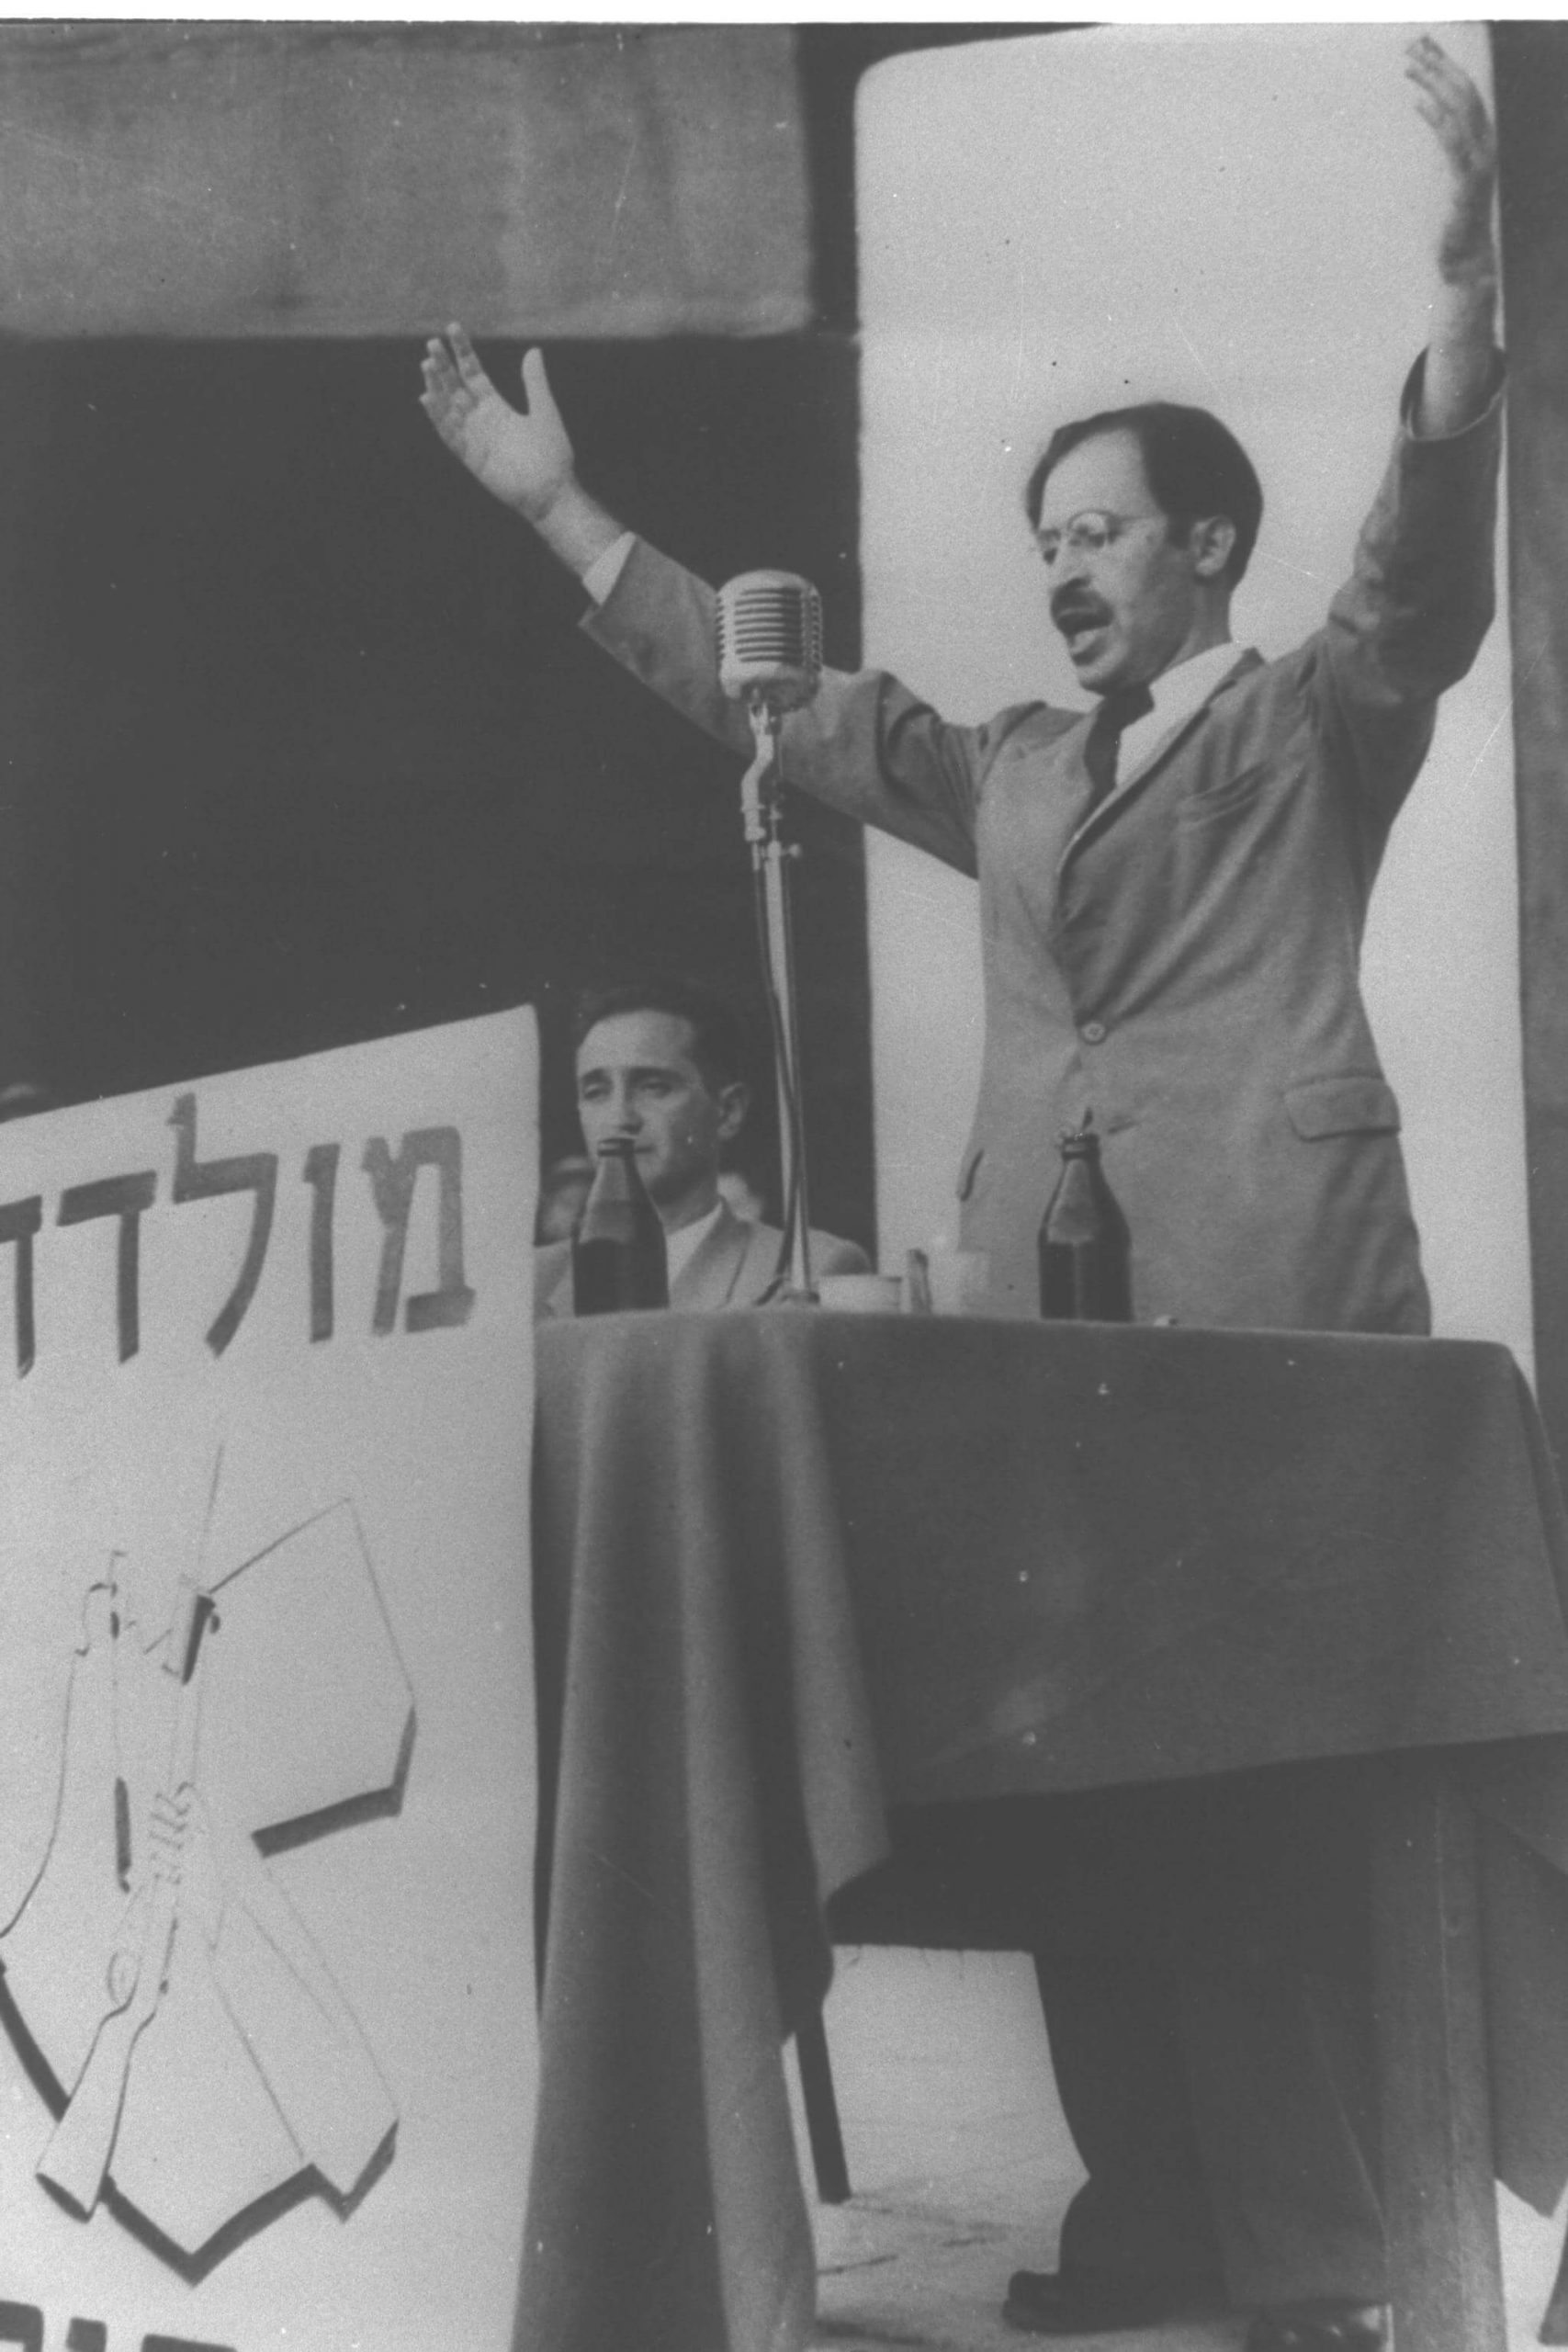 בגין נואם לאחר יציאתו מהמחתרת, ב-14 באוגוסט 1948, בתל אביב. יושב לידו חיים לנדאו. מלפניו הכתובת "מולדת וחרות" וסמל אצ"ל. © ויקיפדיה